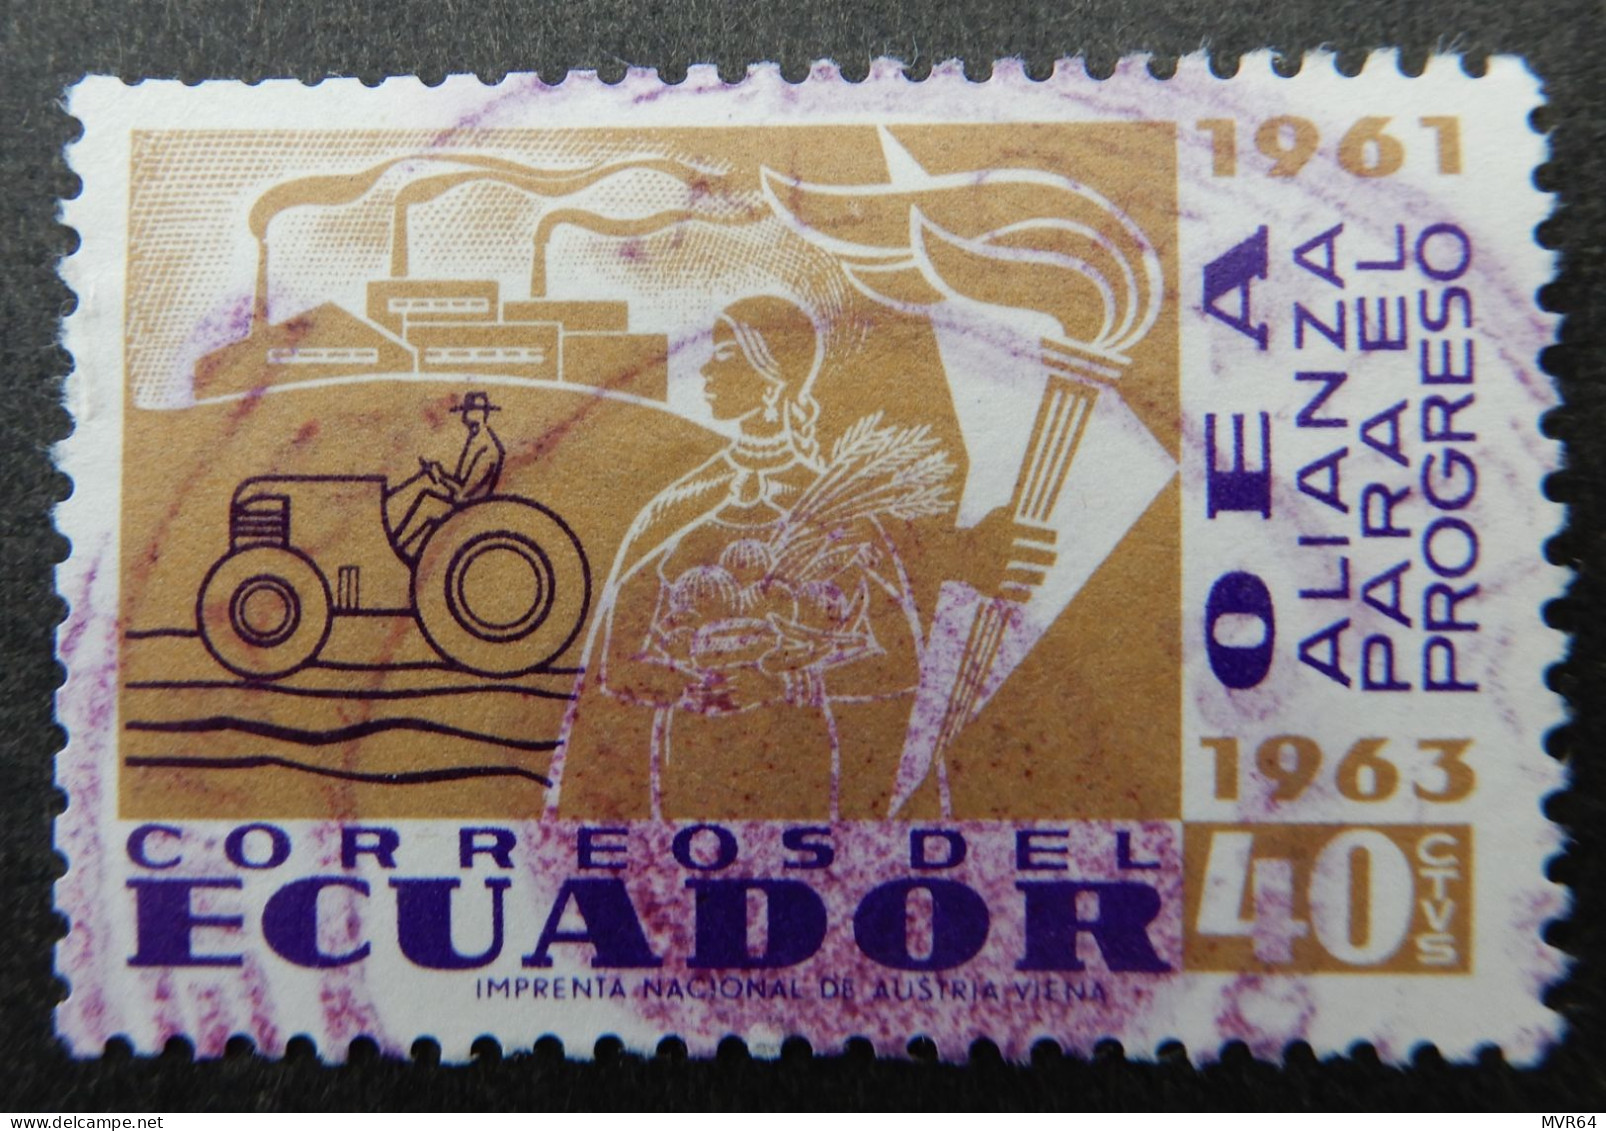 Ecuador 1964 (1) Alliance For Progress - Ecuador